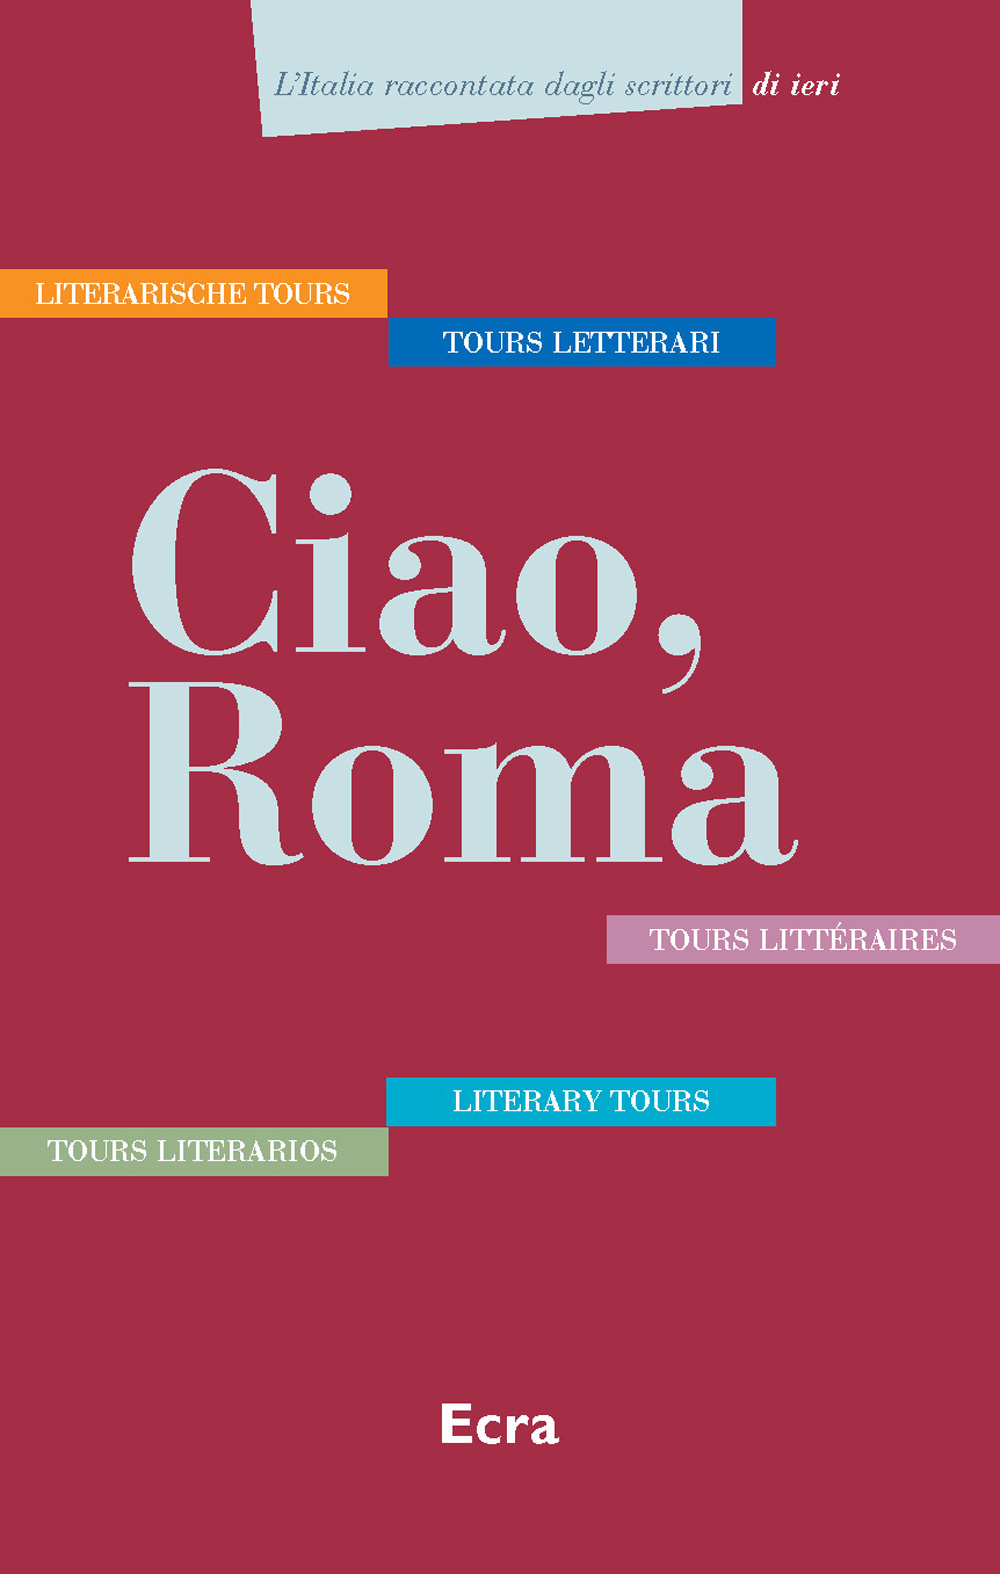 Image of Ciao, Roma. Cinque tours letterari in italiano, inglese, tedesco, francese e spagnolo. Ediz. multilingue